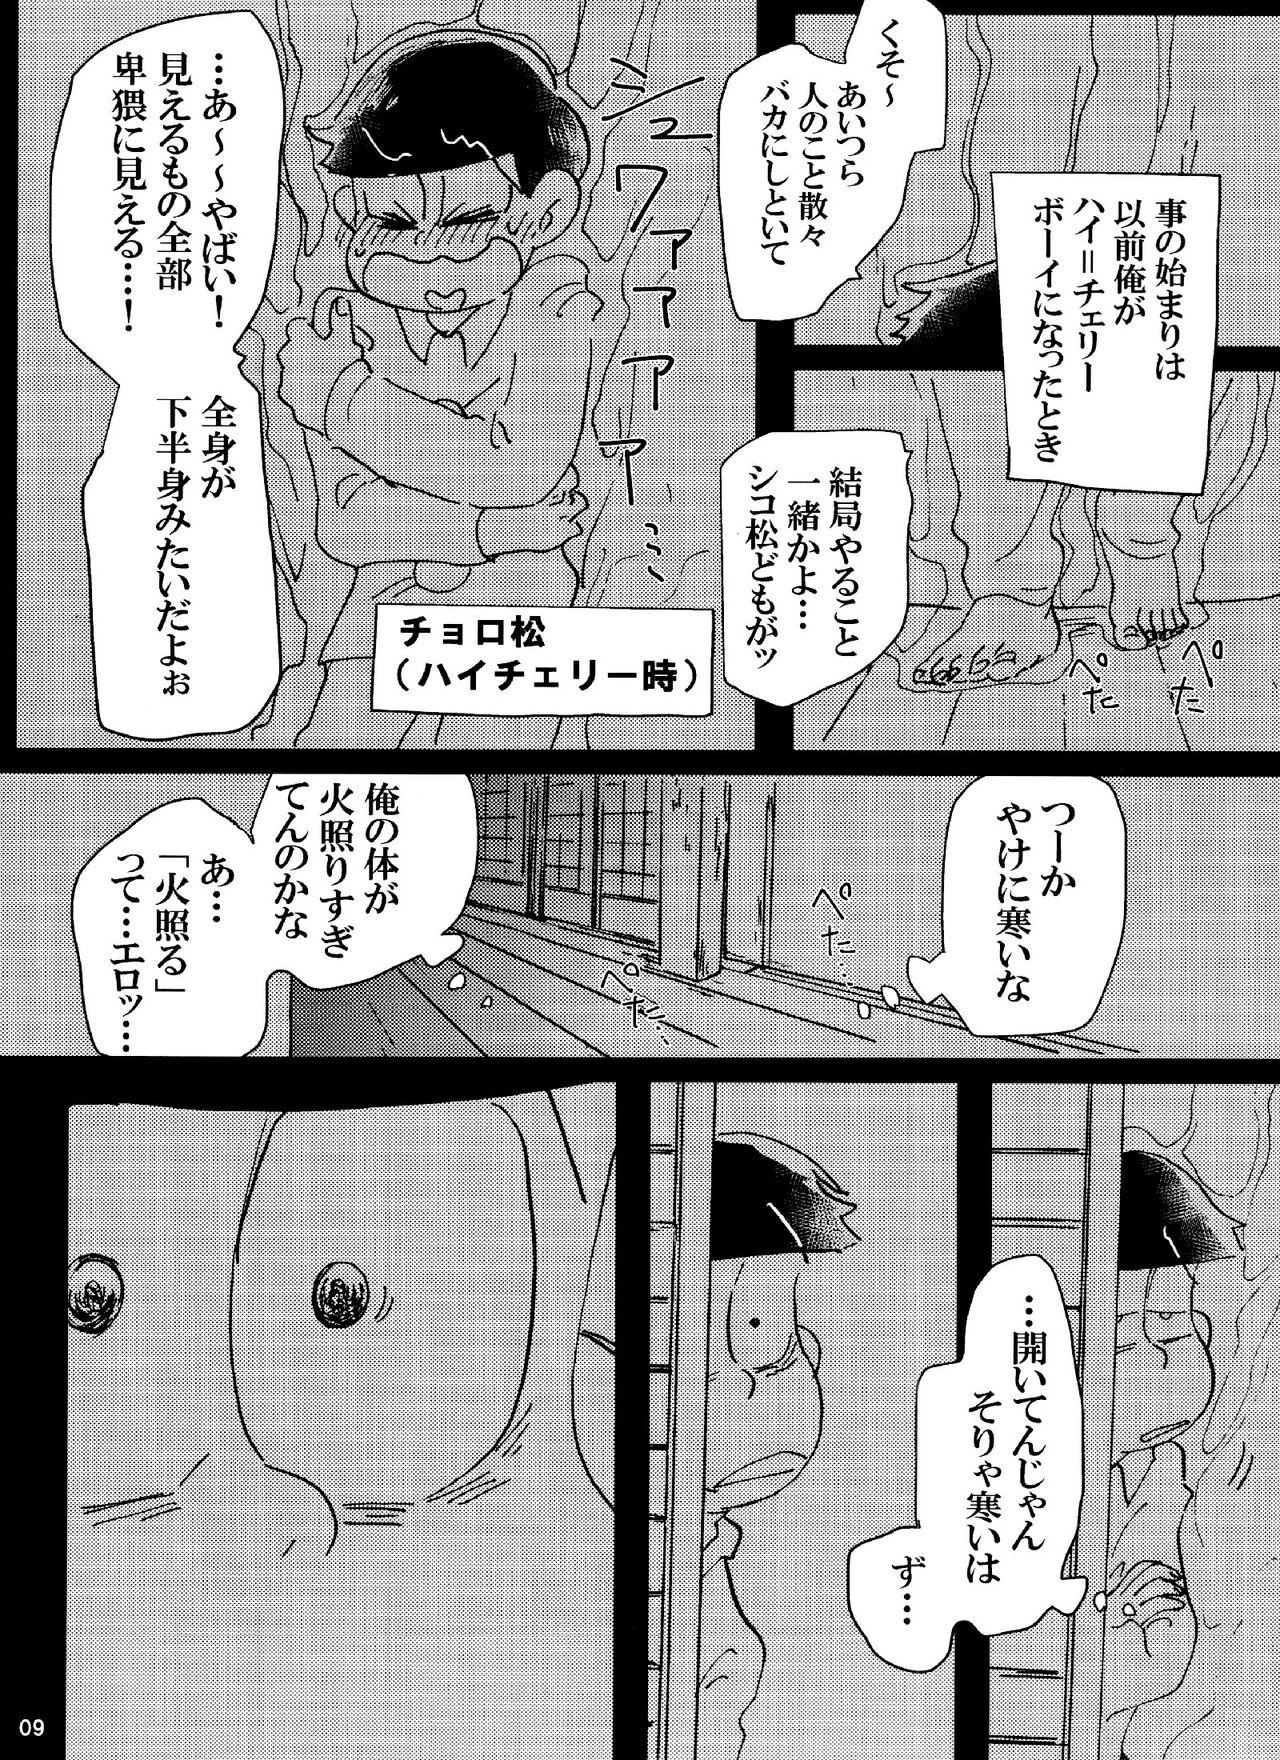 Carro Baka to shiko matsu ga ma guwa u hanashi - Osomatsu san European - Page 9